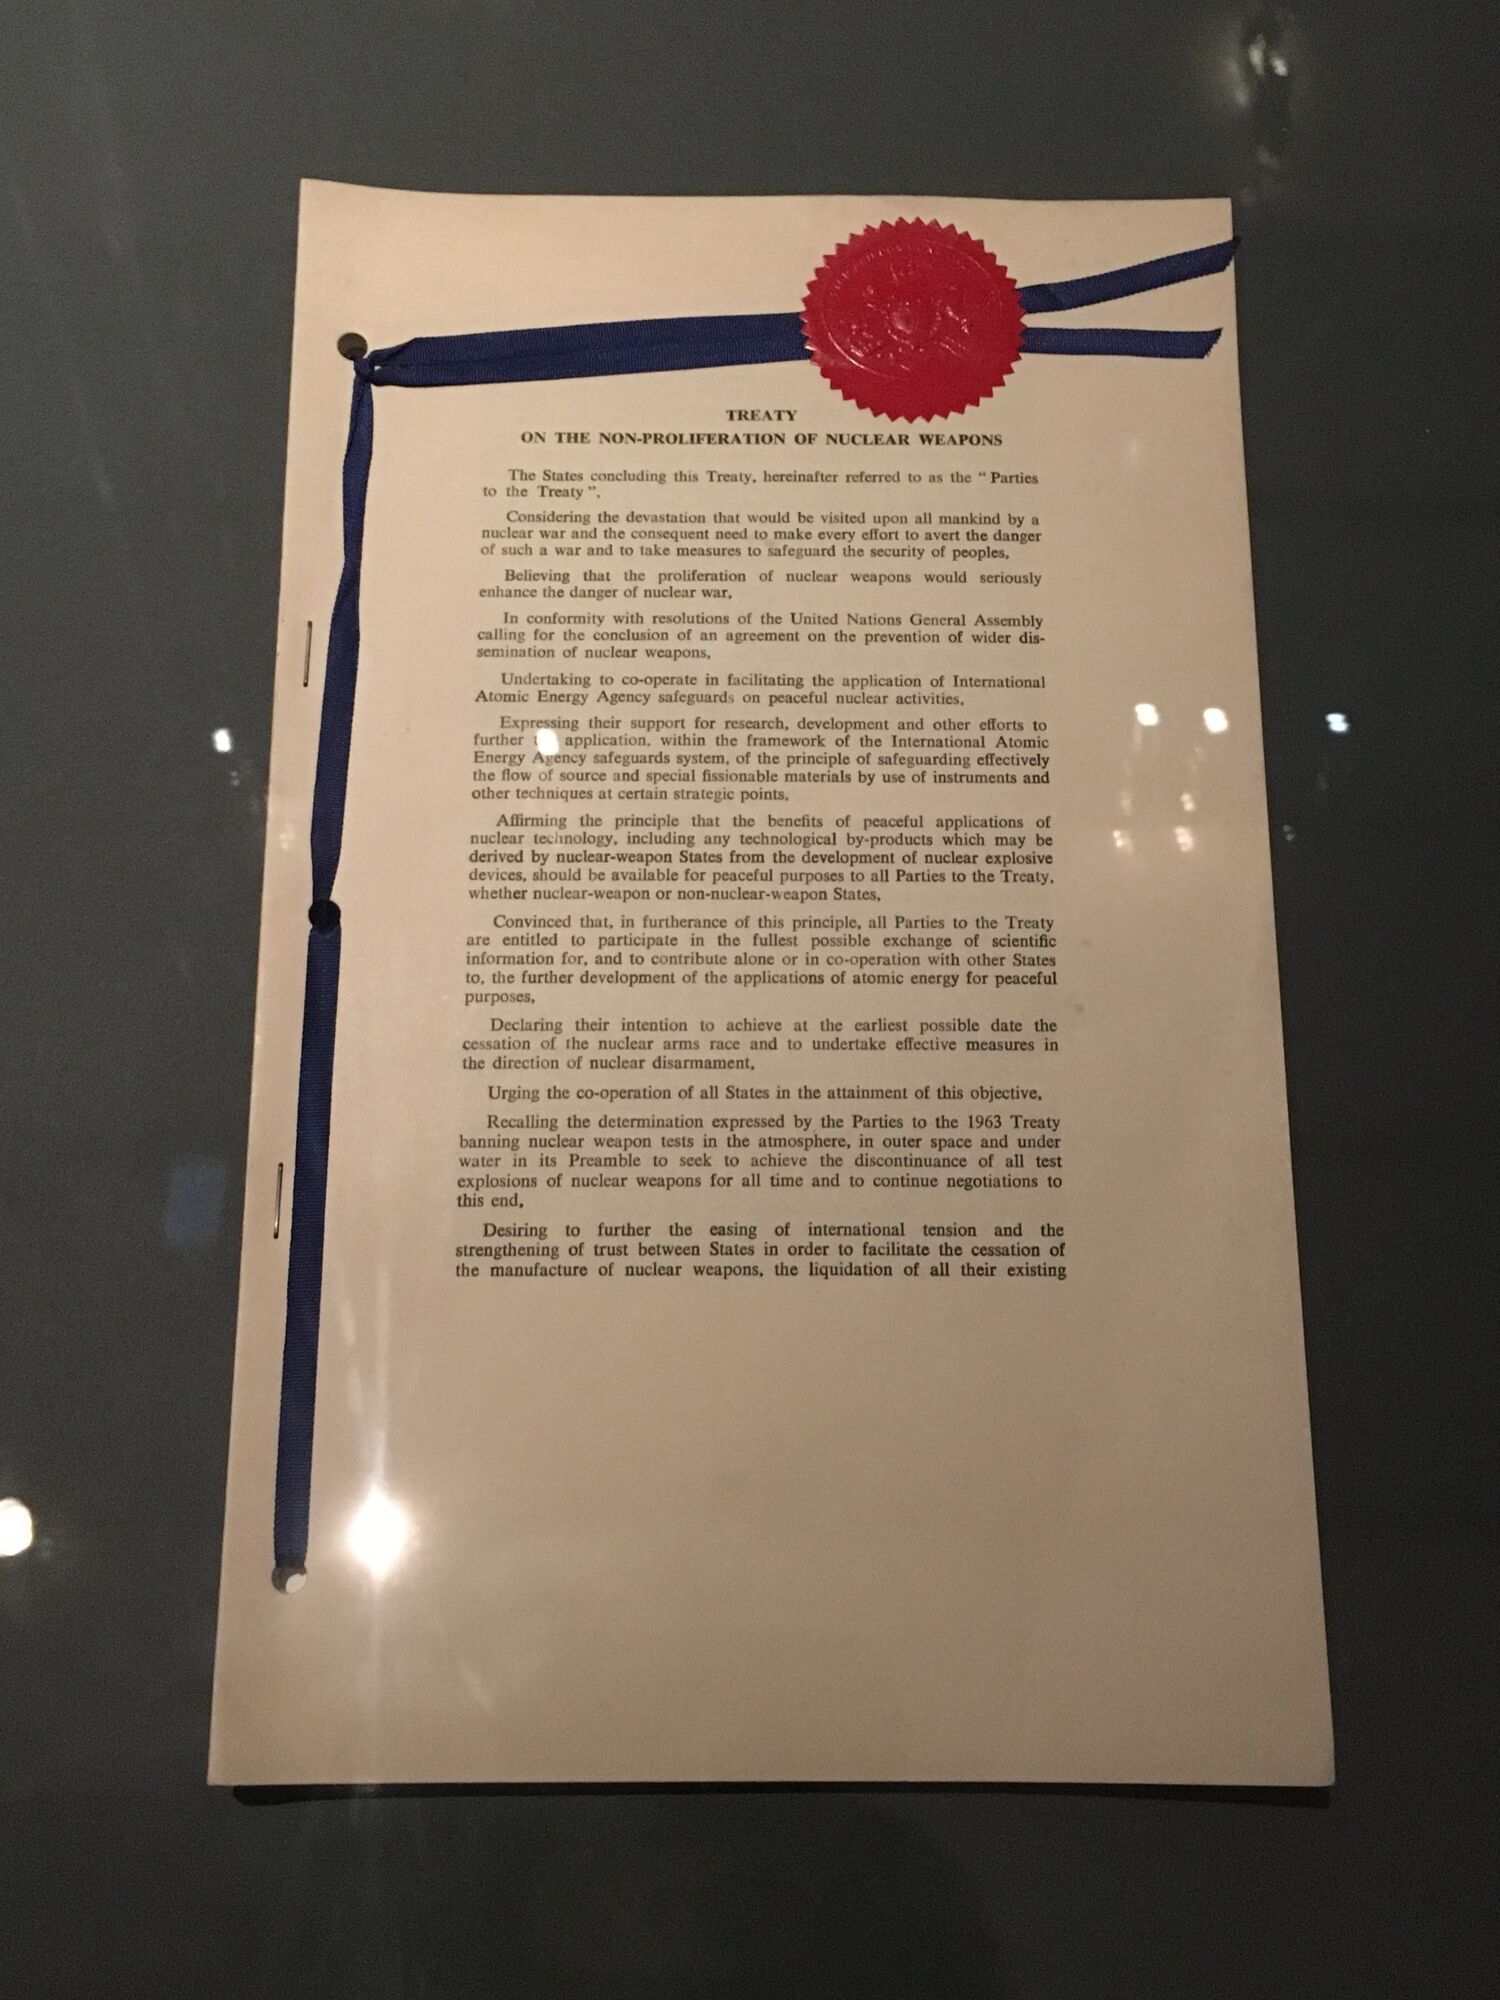 Договір про нерозповсюдження ядерної зброї. Лондон, Москва, Вашингтон, 1 липня 1968 року